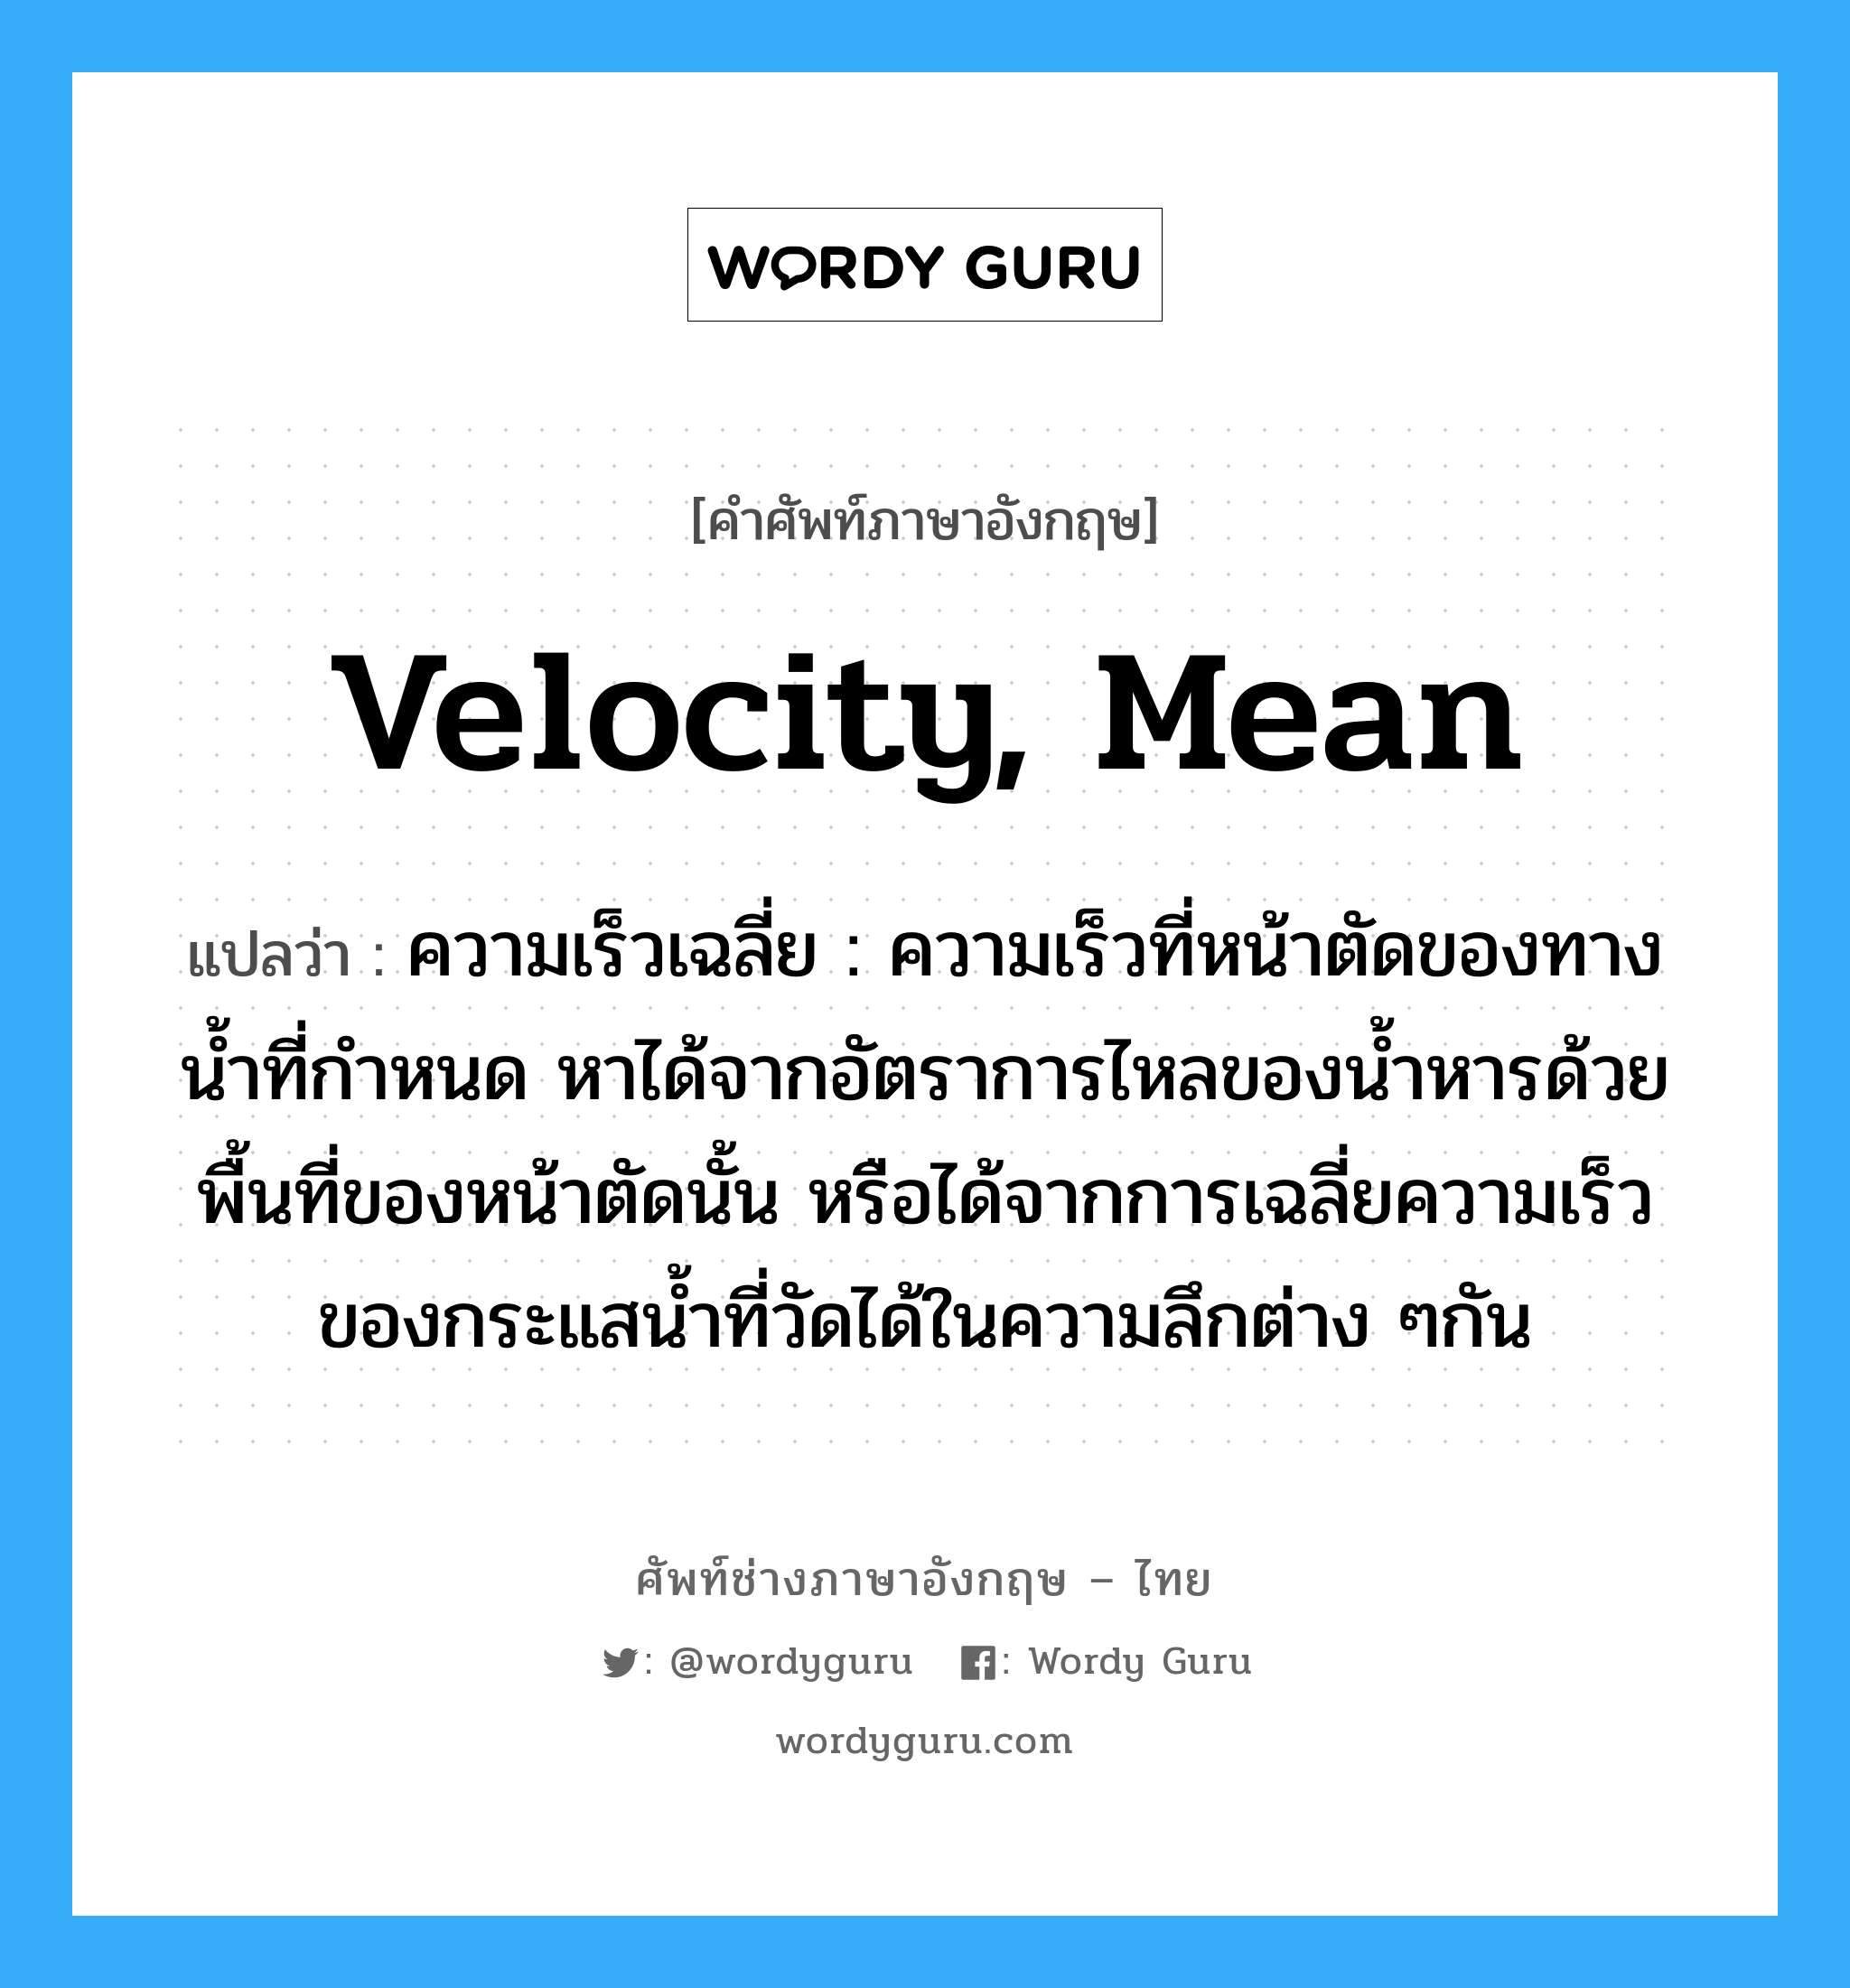 velocity, mean แปลว่า?, คำศัพท์ช่างภาษาอังกฤษ - ไทย velocity, mean คำศัพท์ภาษาอังกฤษ velocity, mean แปลว่า ความเร็วเฉลี่ย : ความเร็วที่หน้าตัดของทางน้ำที่กำหนด หาได้จากอัตราการไหลของน้ำหารด้วยพื้นที่ของหน้าตัดนั้น หรือได้จากการเฉลี่ยความเร็วของกระแสน้ำที่วัดได้ในความลึกต่าง ๆกัน